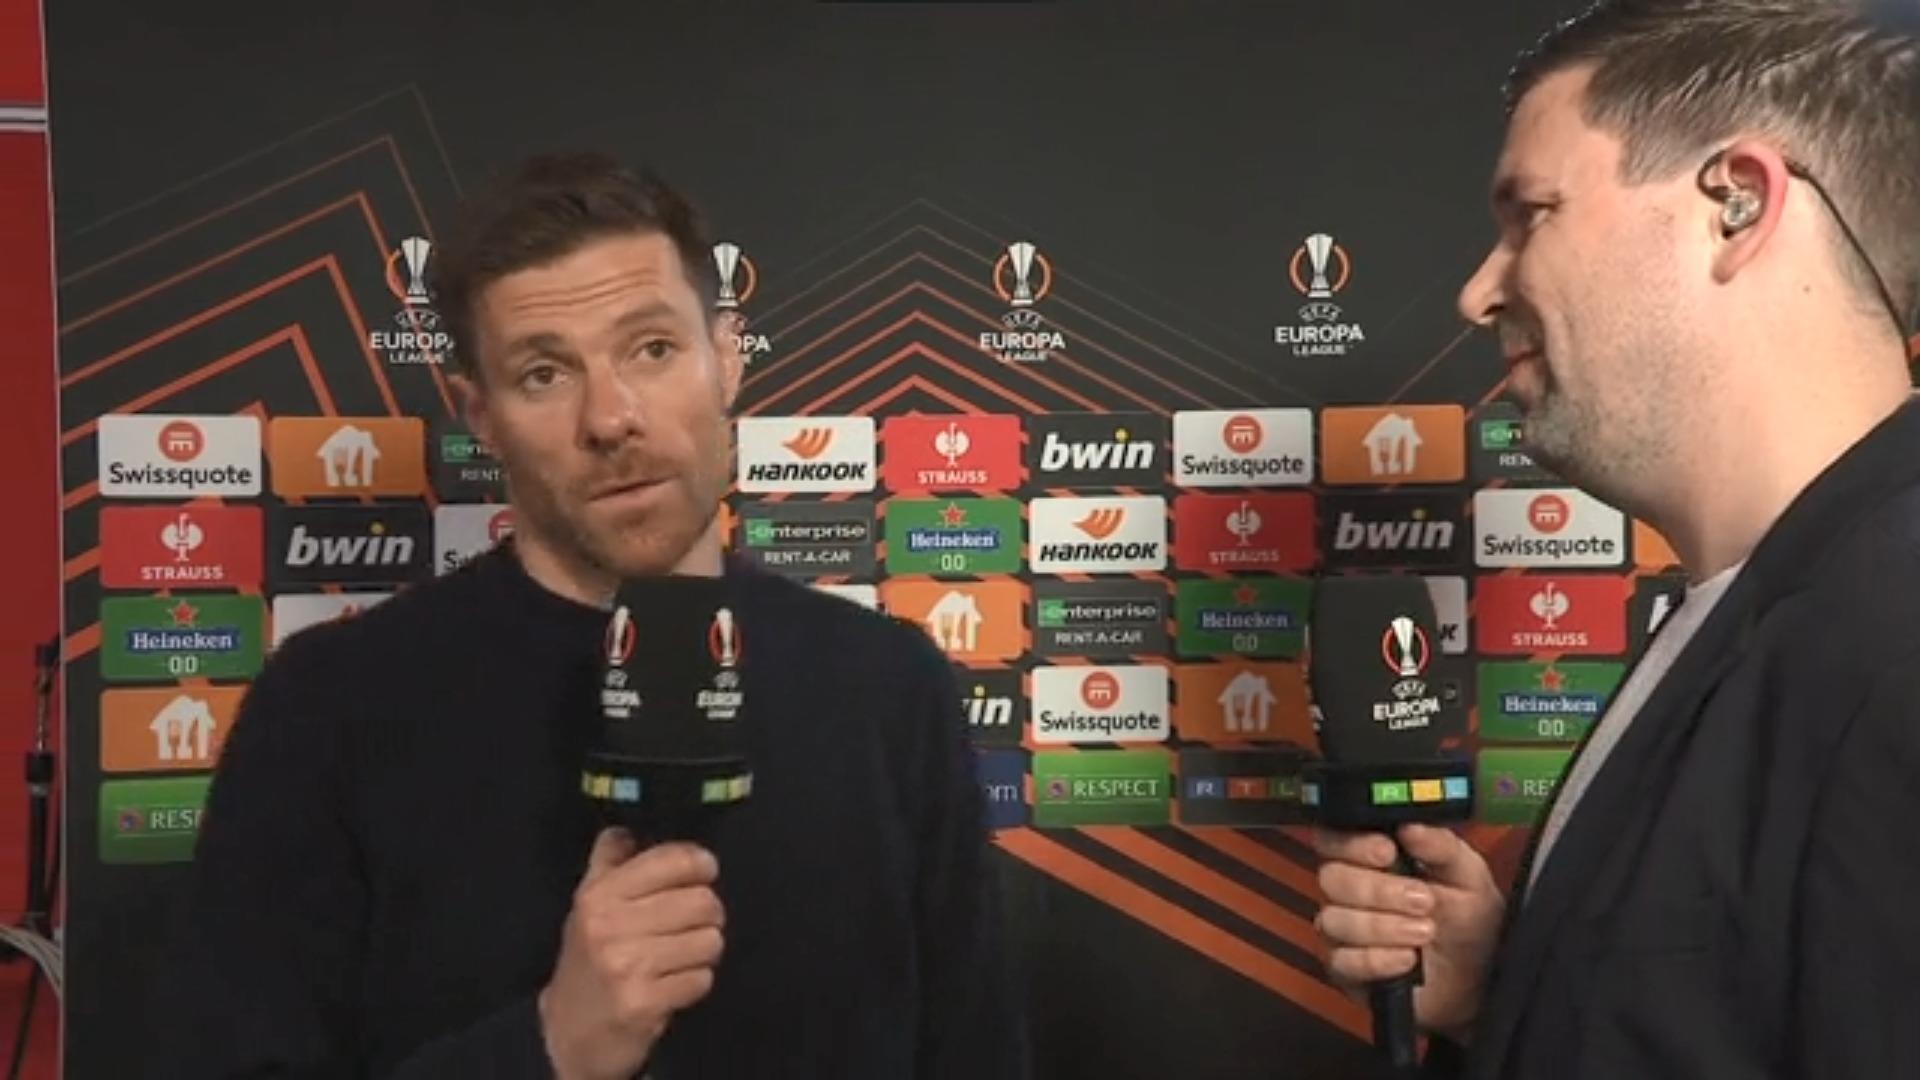 Alonso: "Wir wollten unbedingt ein Tor machen" Leverkusens Trainer nach Halbfinal-Aus ernüchtert